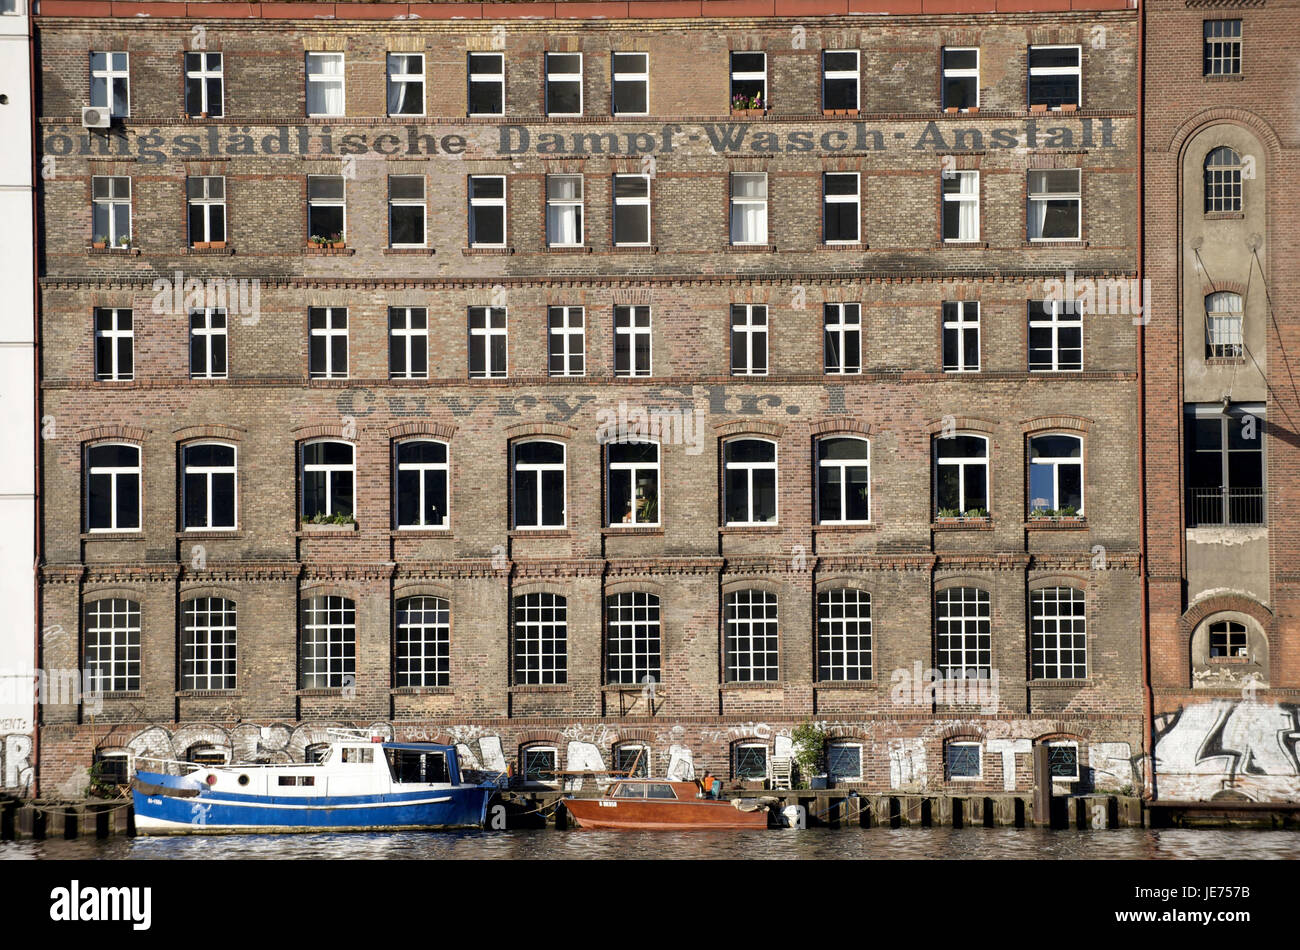 Alemania, Berlín, fachada el rey-urbana, institución Dampf-Wasch Foto de stock